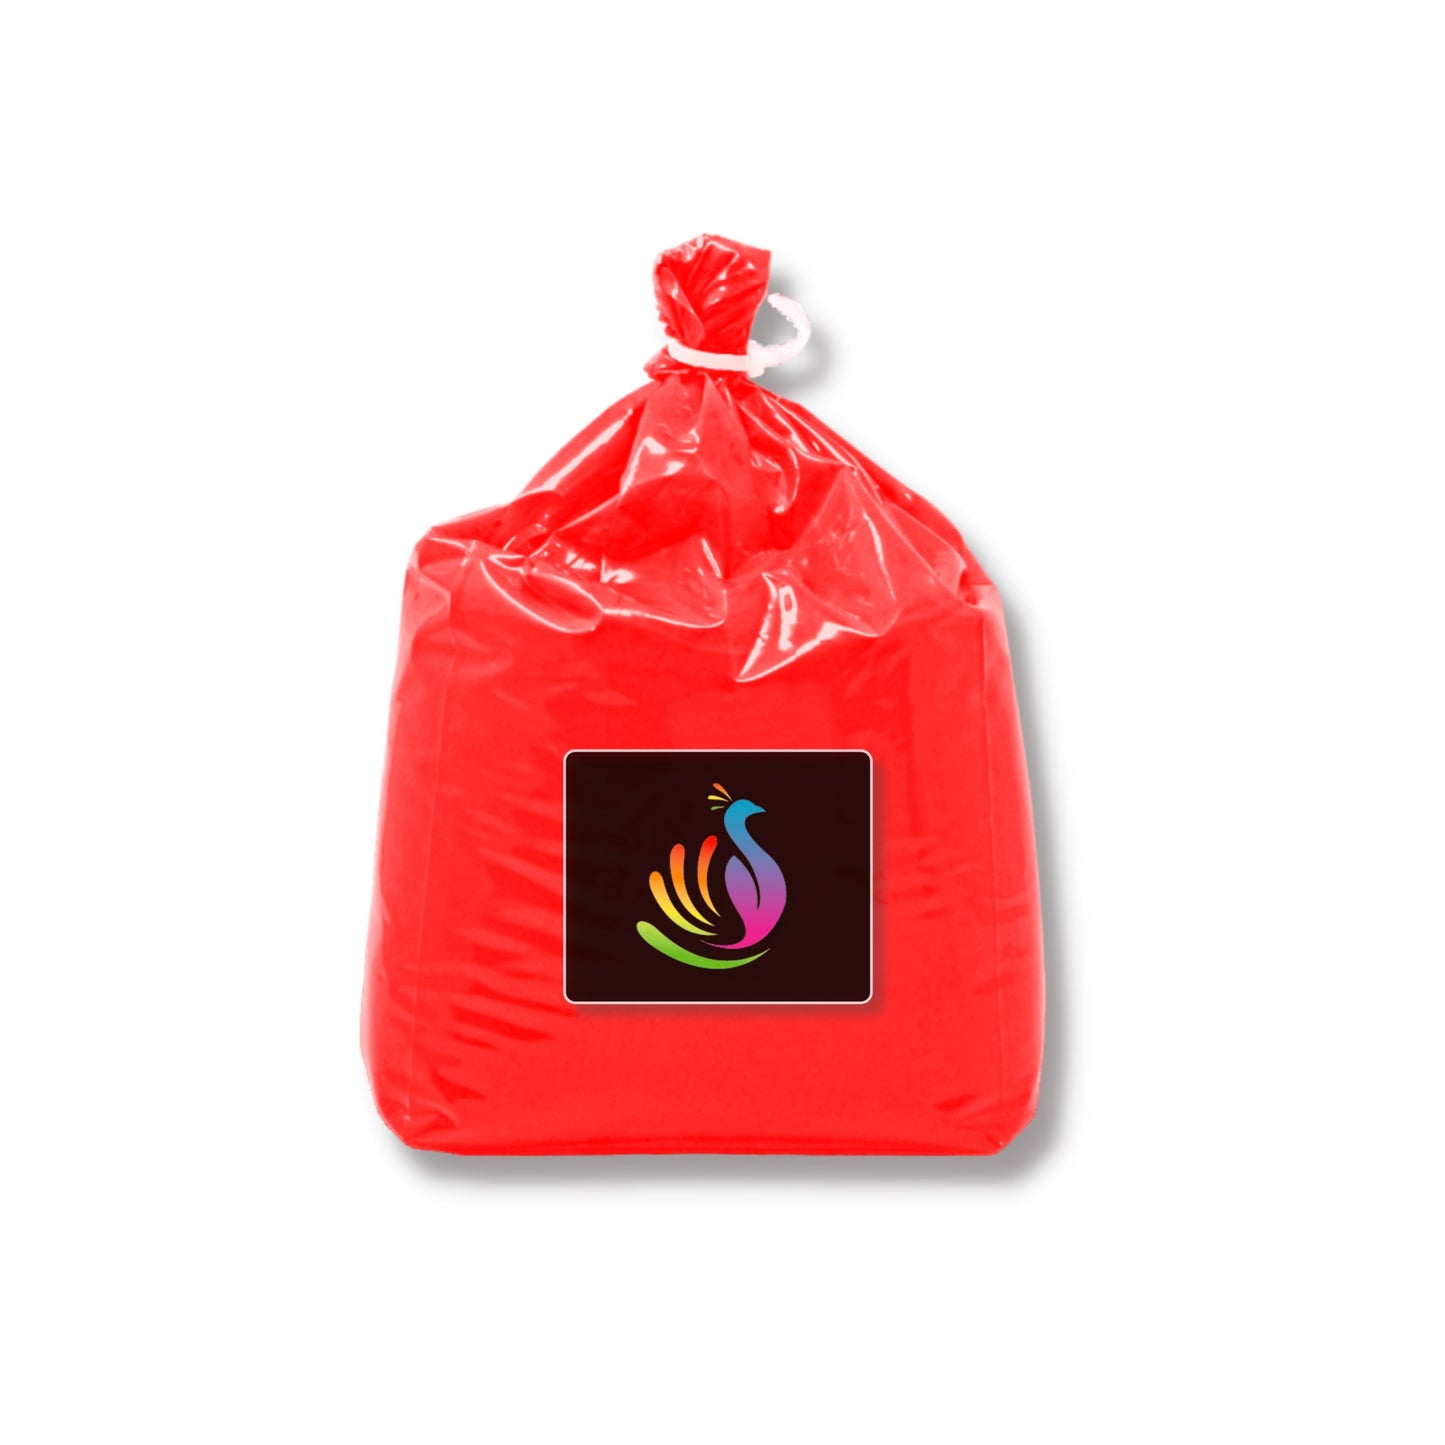 5lb Bag Holi Color Powder